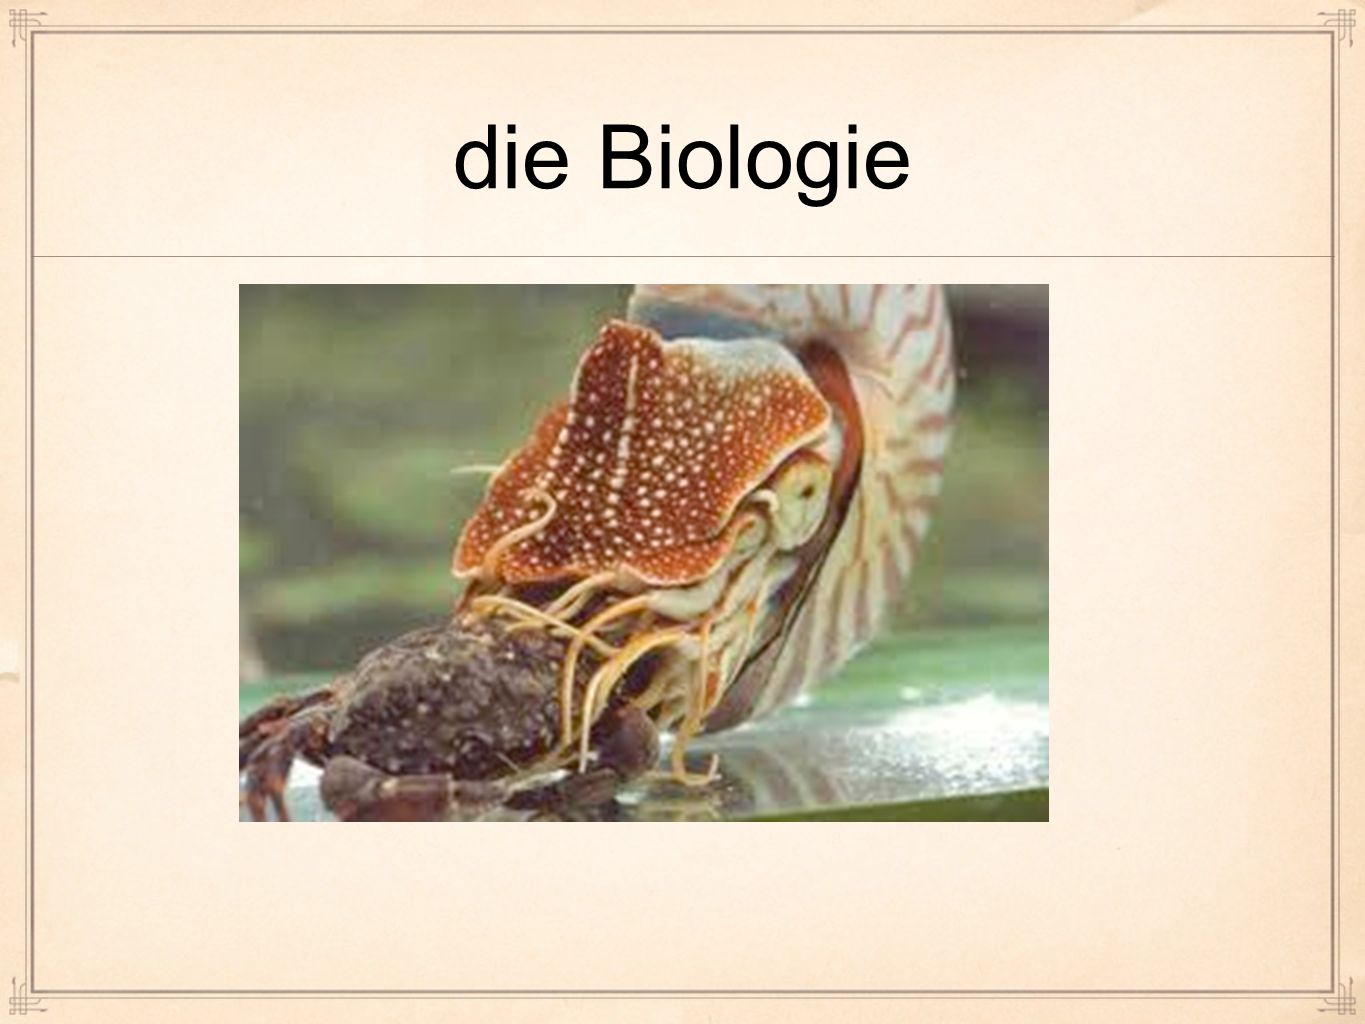 die Biologie